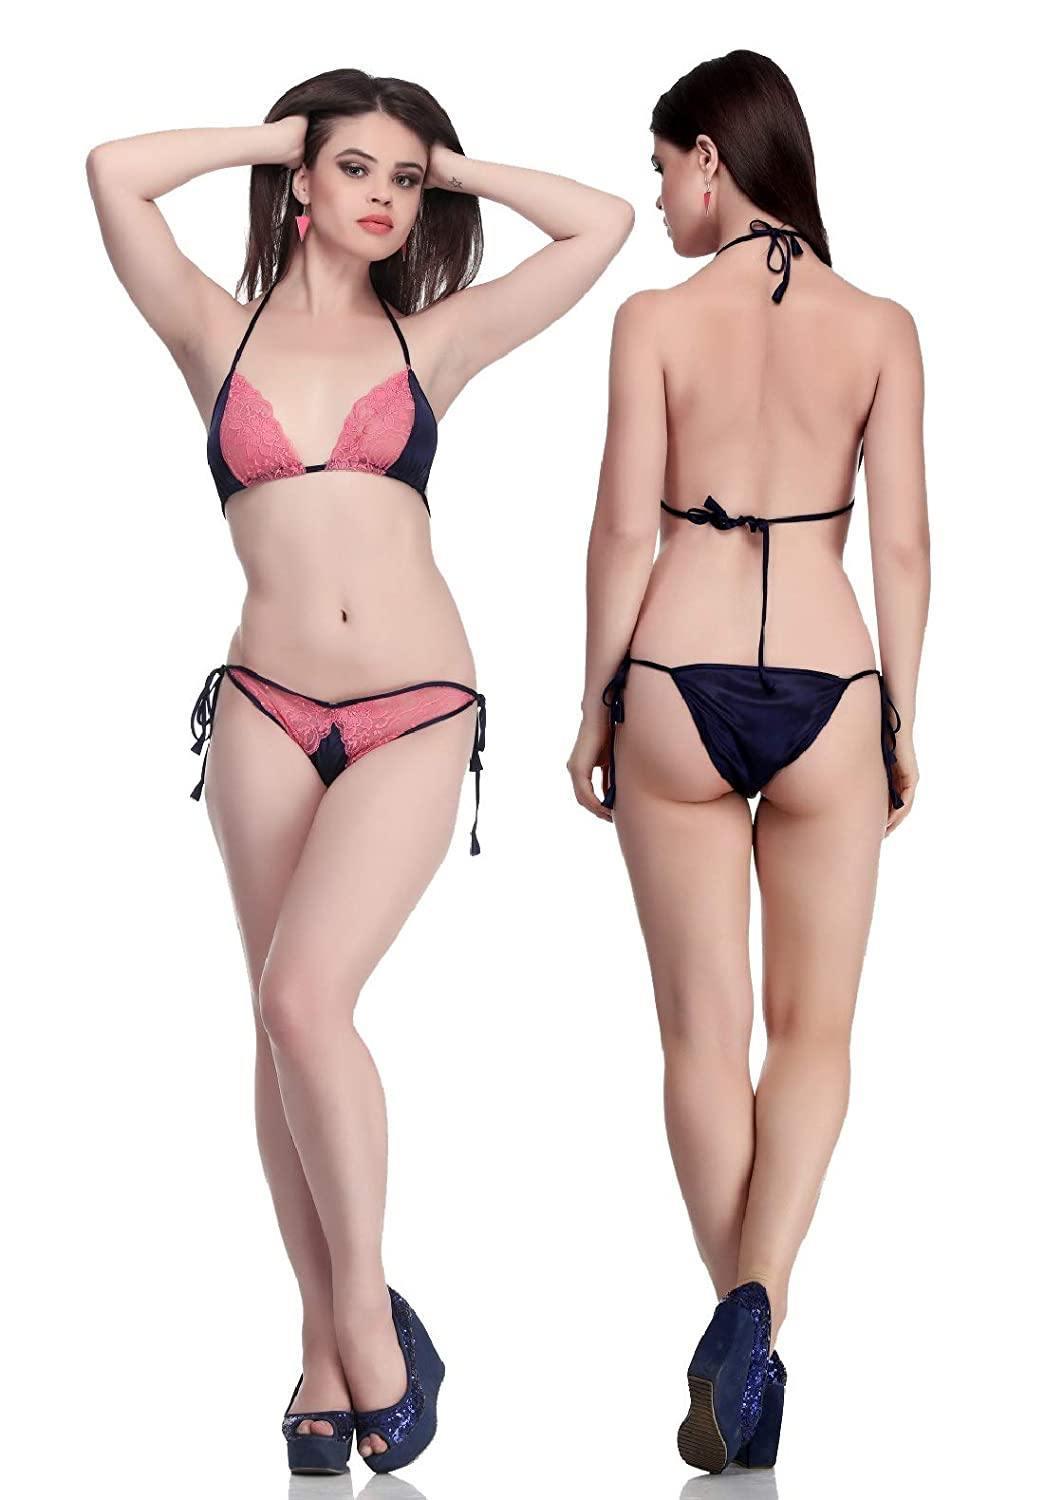 Buy bra panty set for women, lingerie set for women